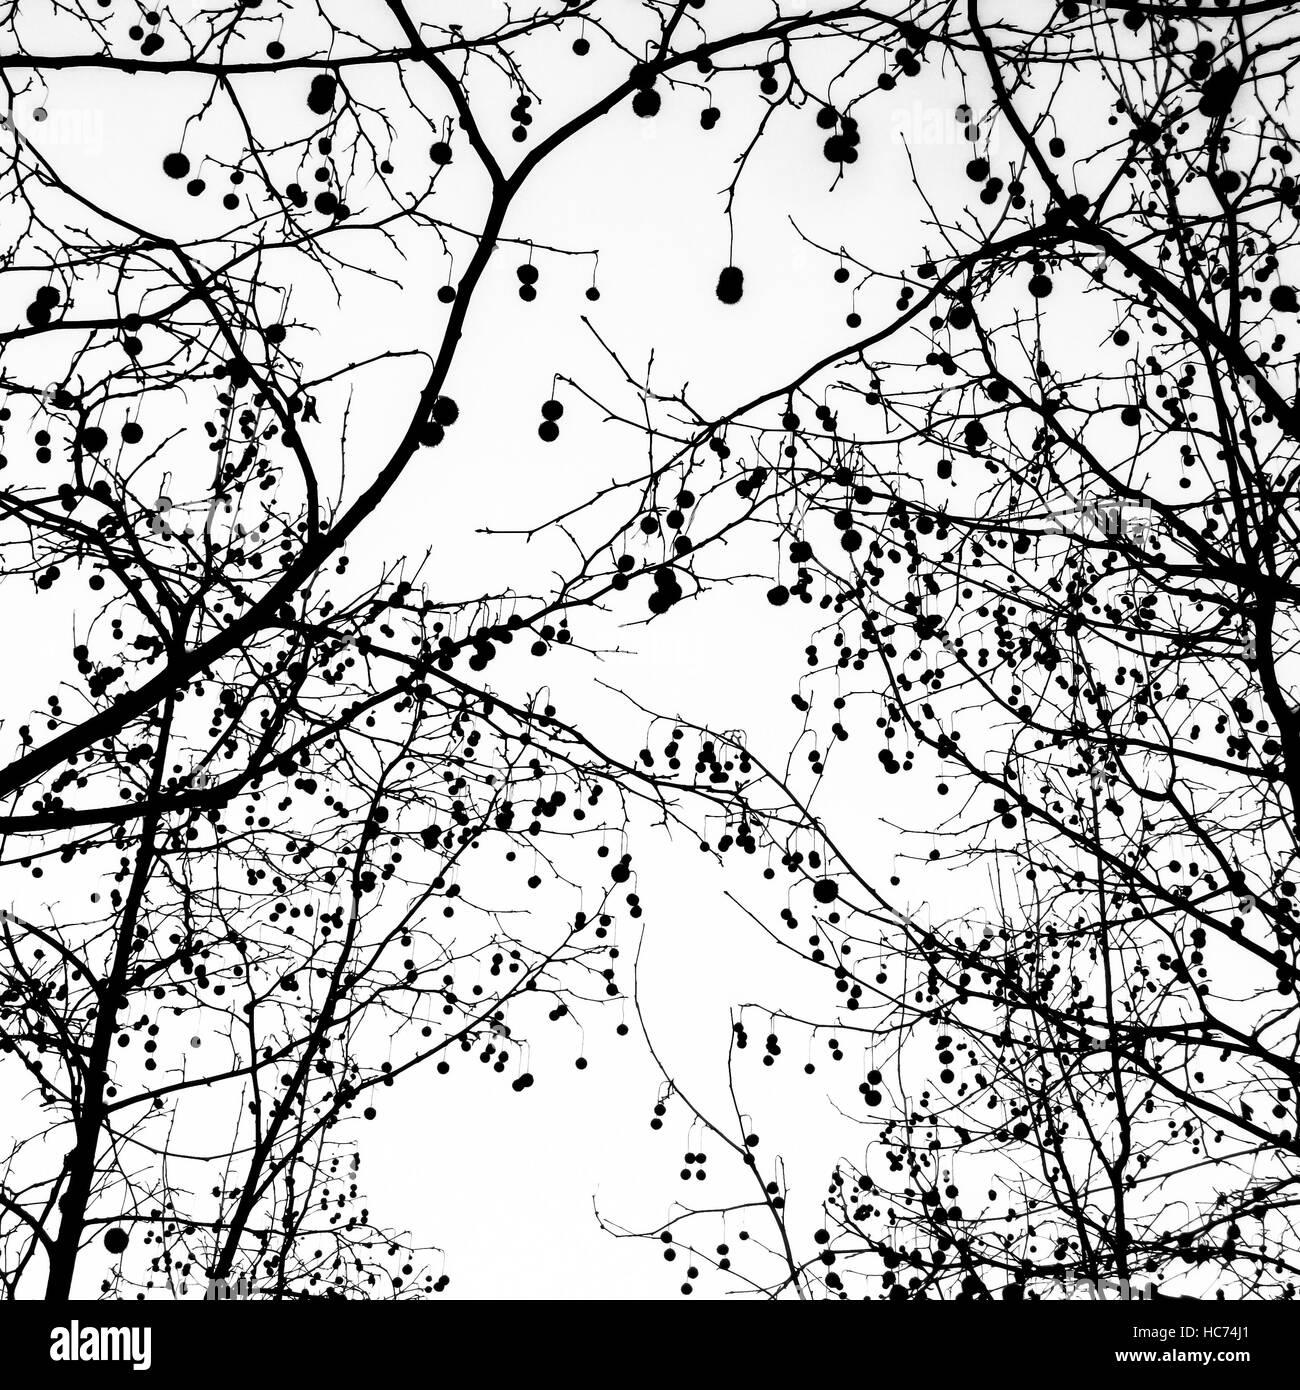 Tree silhouette Stock Photo